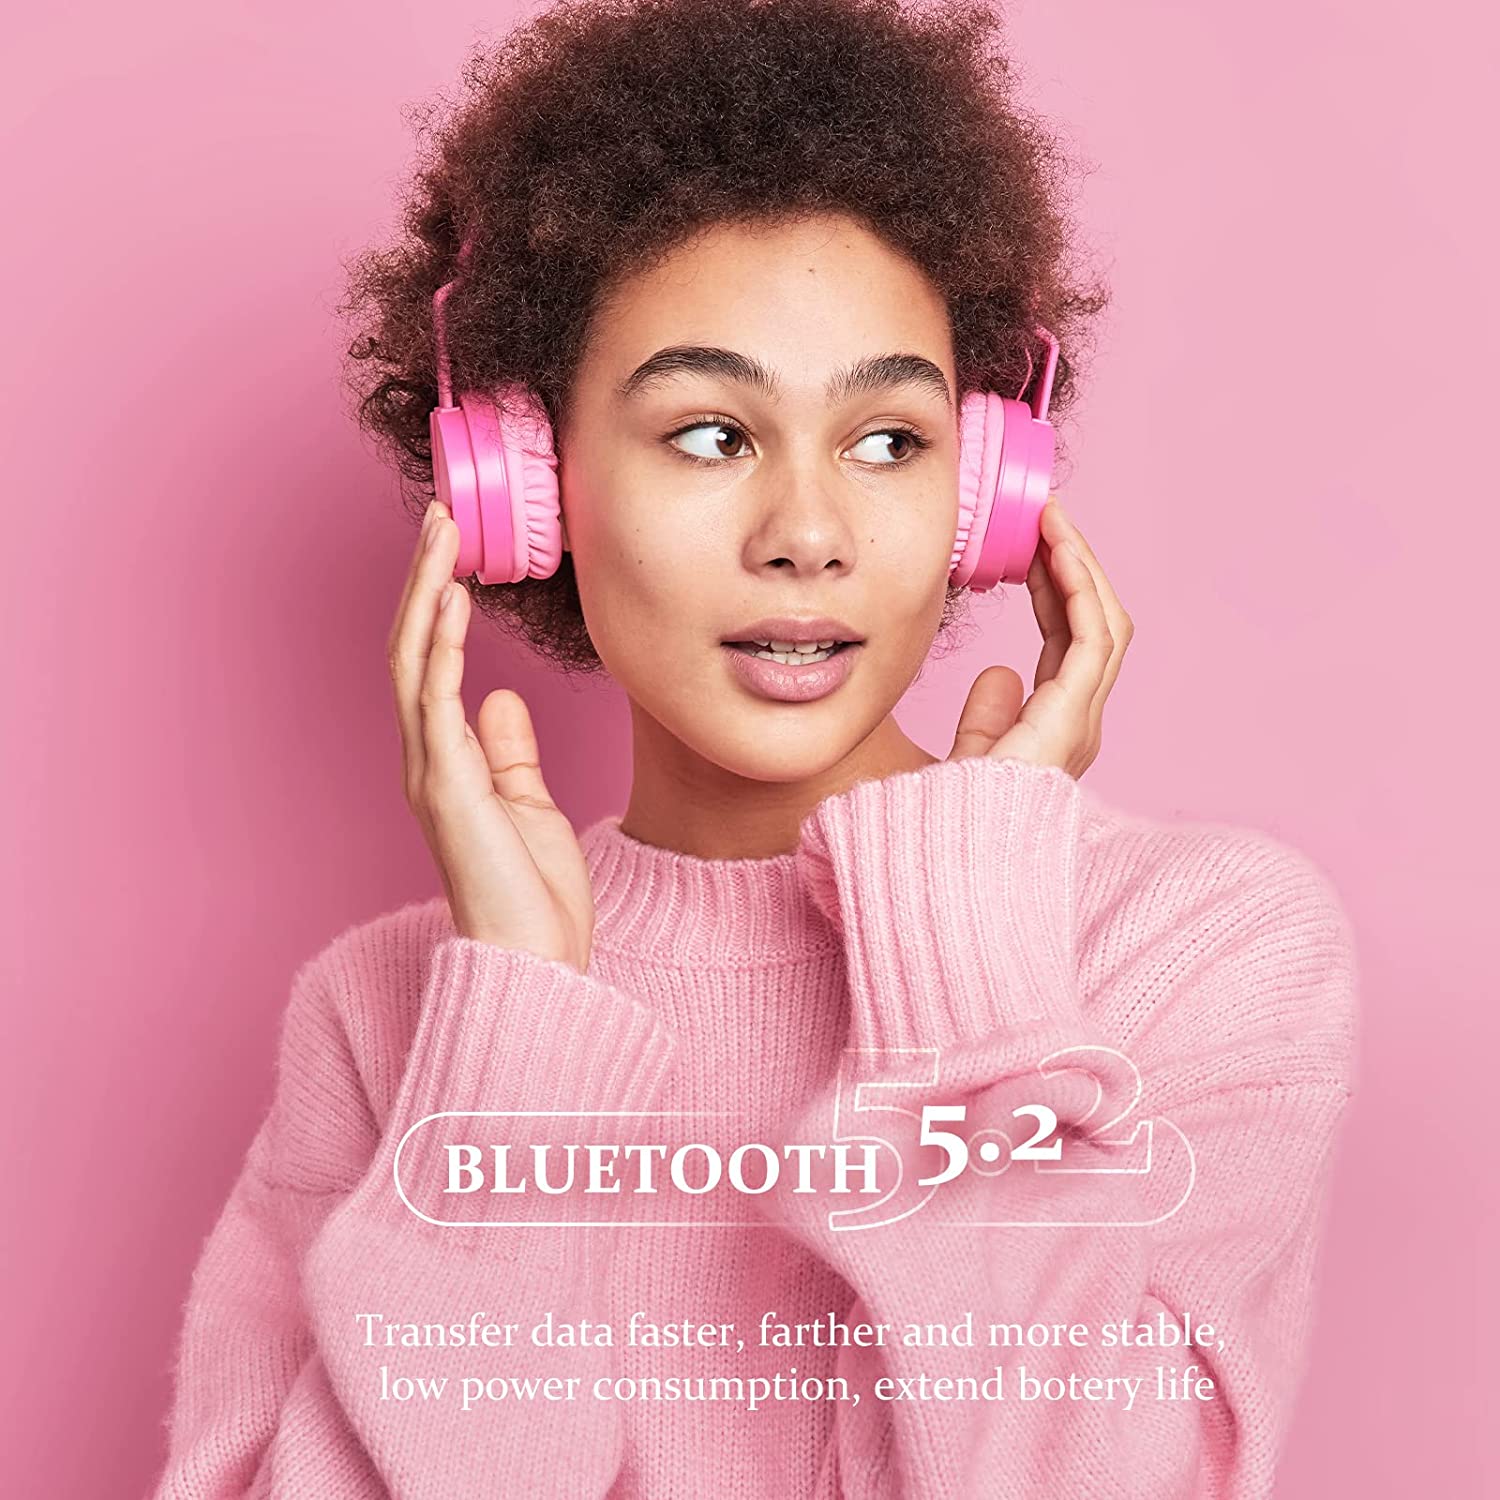 【Novità nel 2022】64GB Lettore MP3 Bluetooth 5.2, COCONISE Lettore MP3